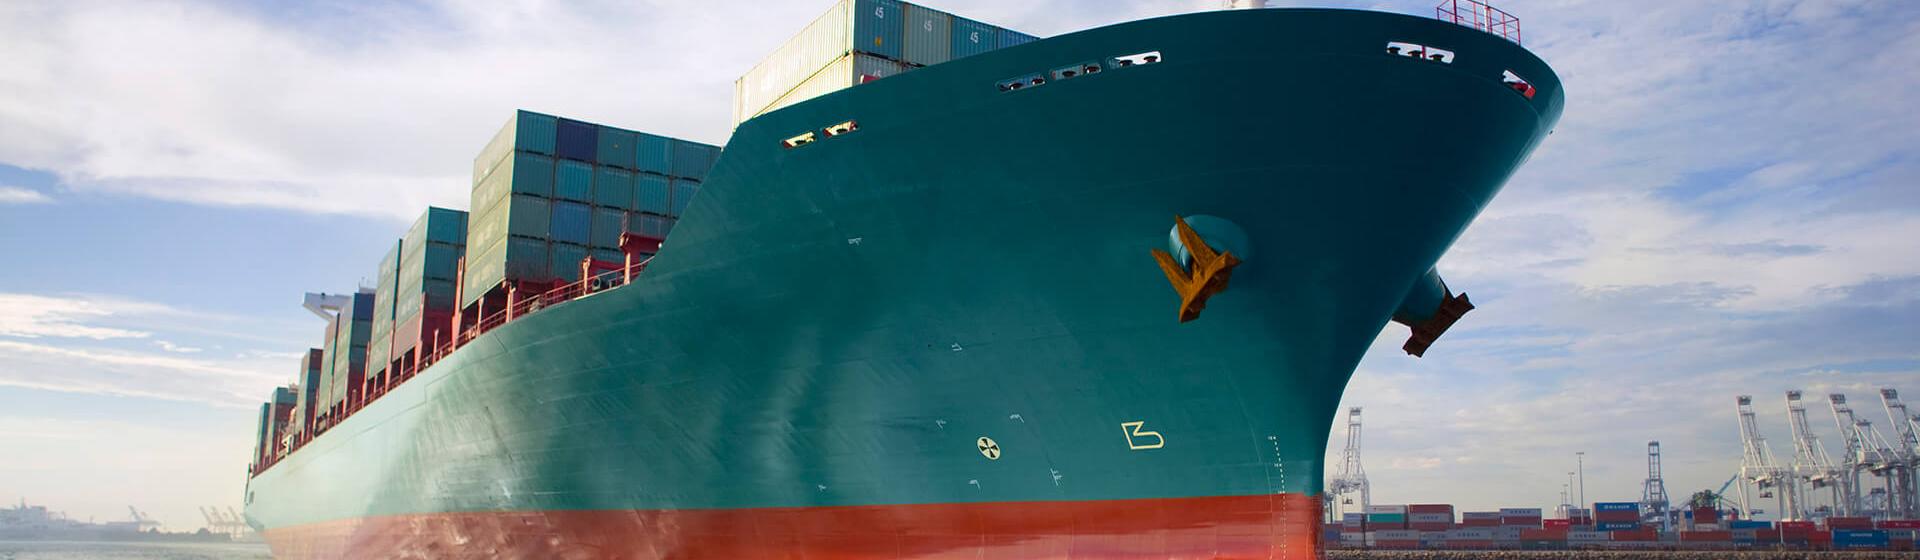 港を航行するコンテナ貨物船を海面レベルから見た画像。背景にはクレーンが見える。